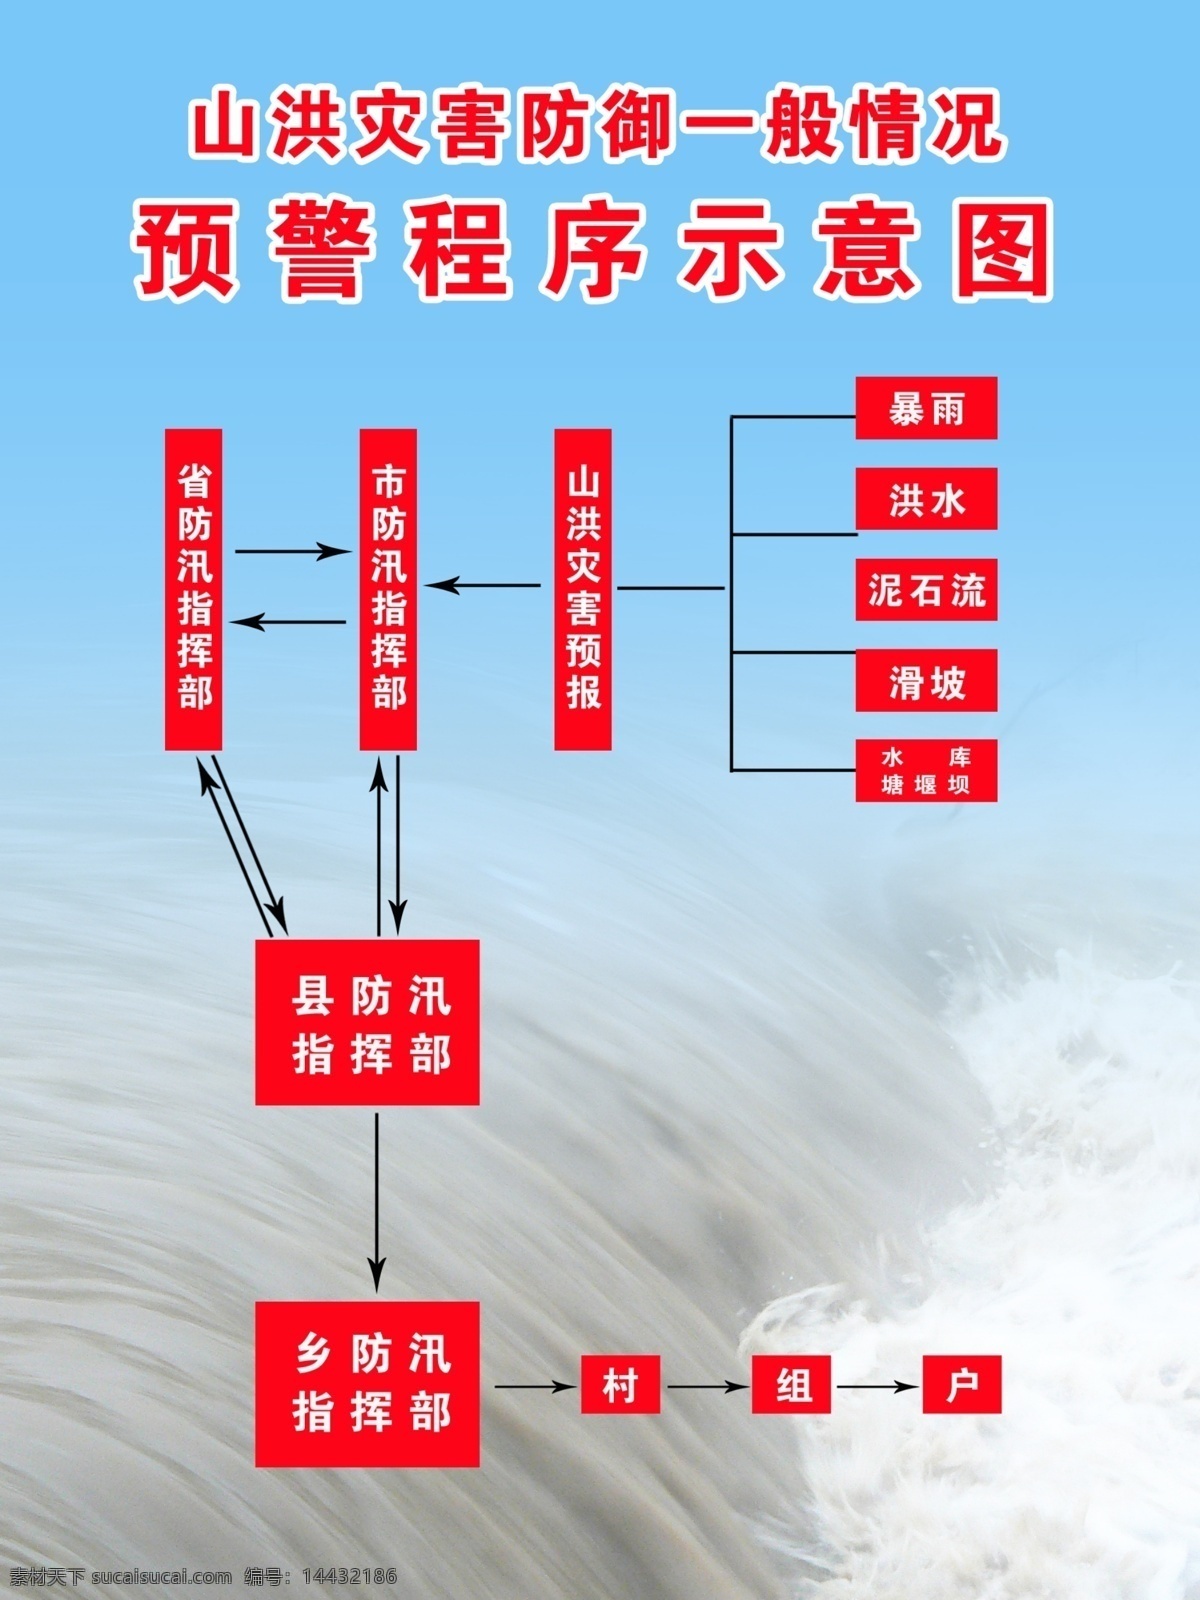 山洪 灾害 防御 一般 情况 防汛工作 自然灾害 预防 工作制度 制度 展板模板 红色